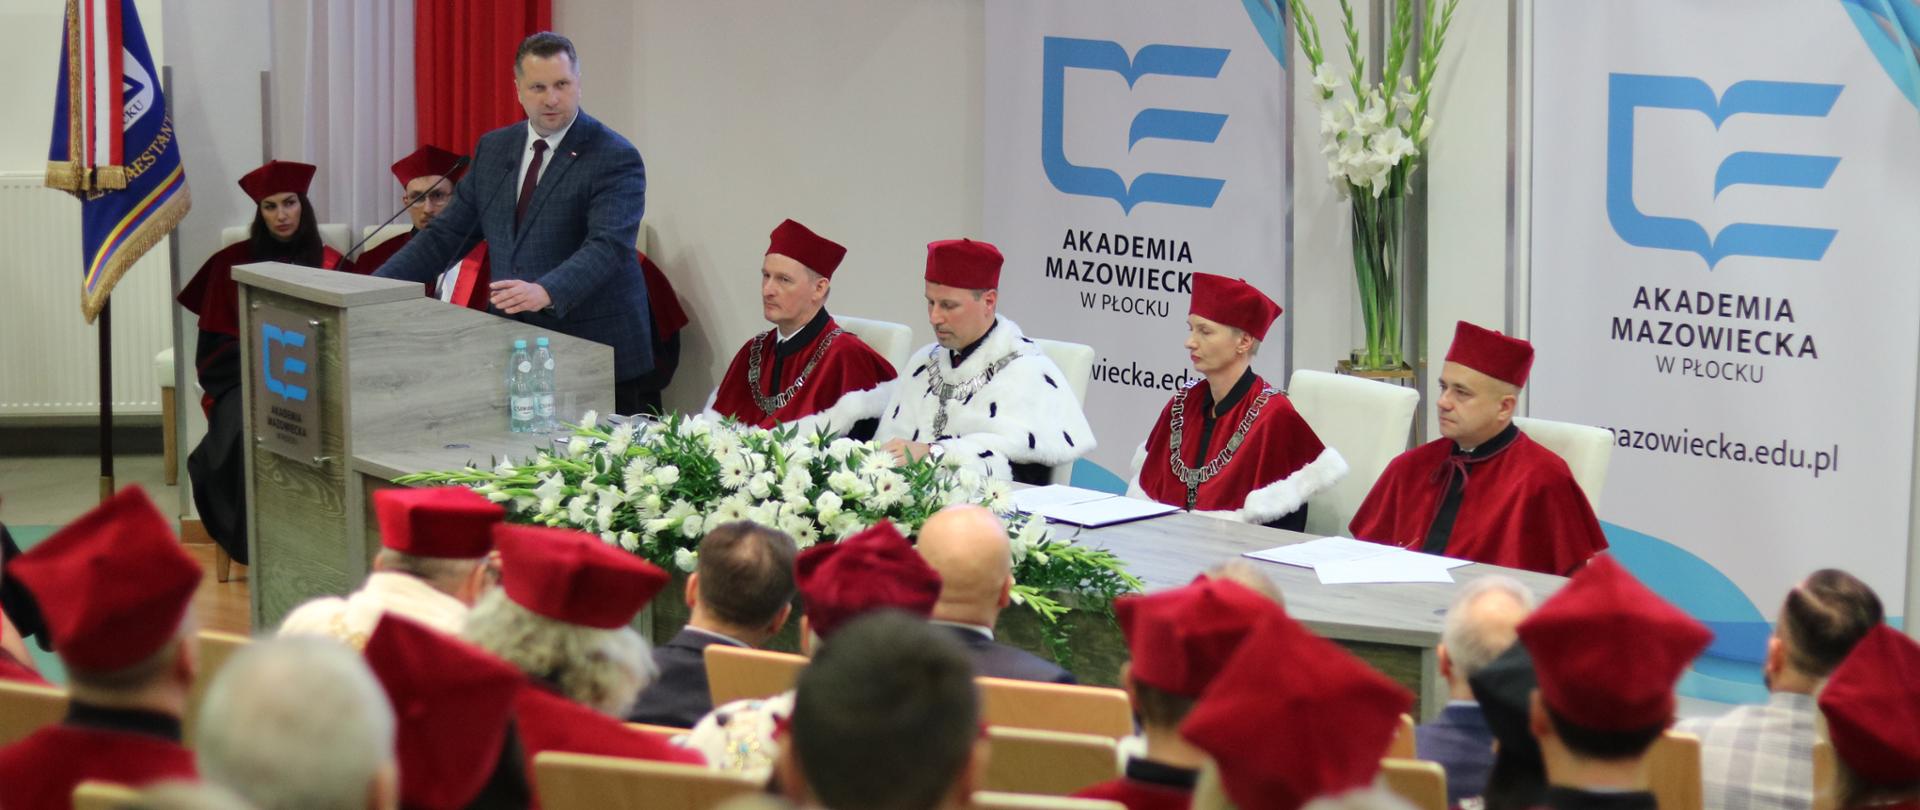 Minister Czarnek przy mikrofonie obok niego siedzą władze uczelni- kobieta i trzech mężczyzn, tyłem widać uczestników inauguracji